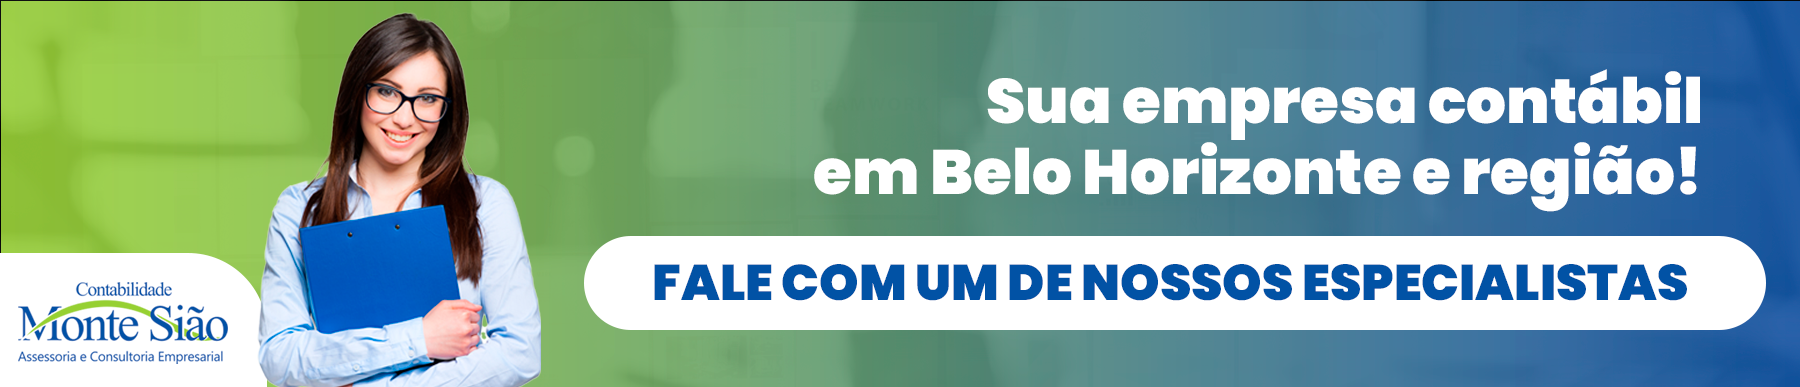 Encontre o melhor serviço de contabilidade em Belo Horizonte com a Contabilidade Monte Sião